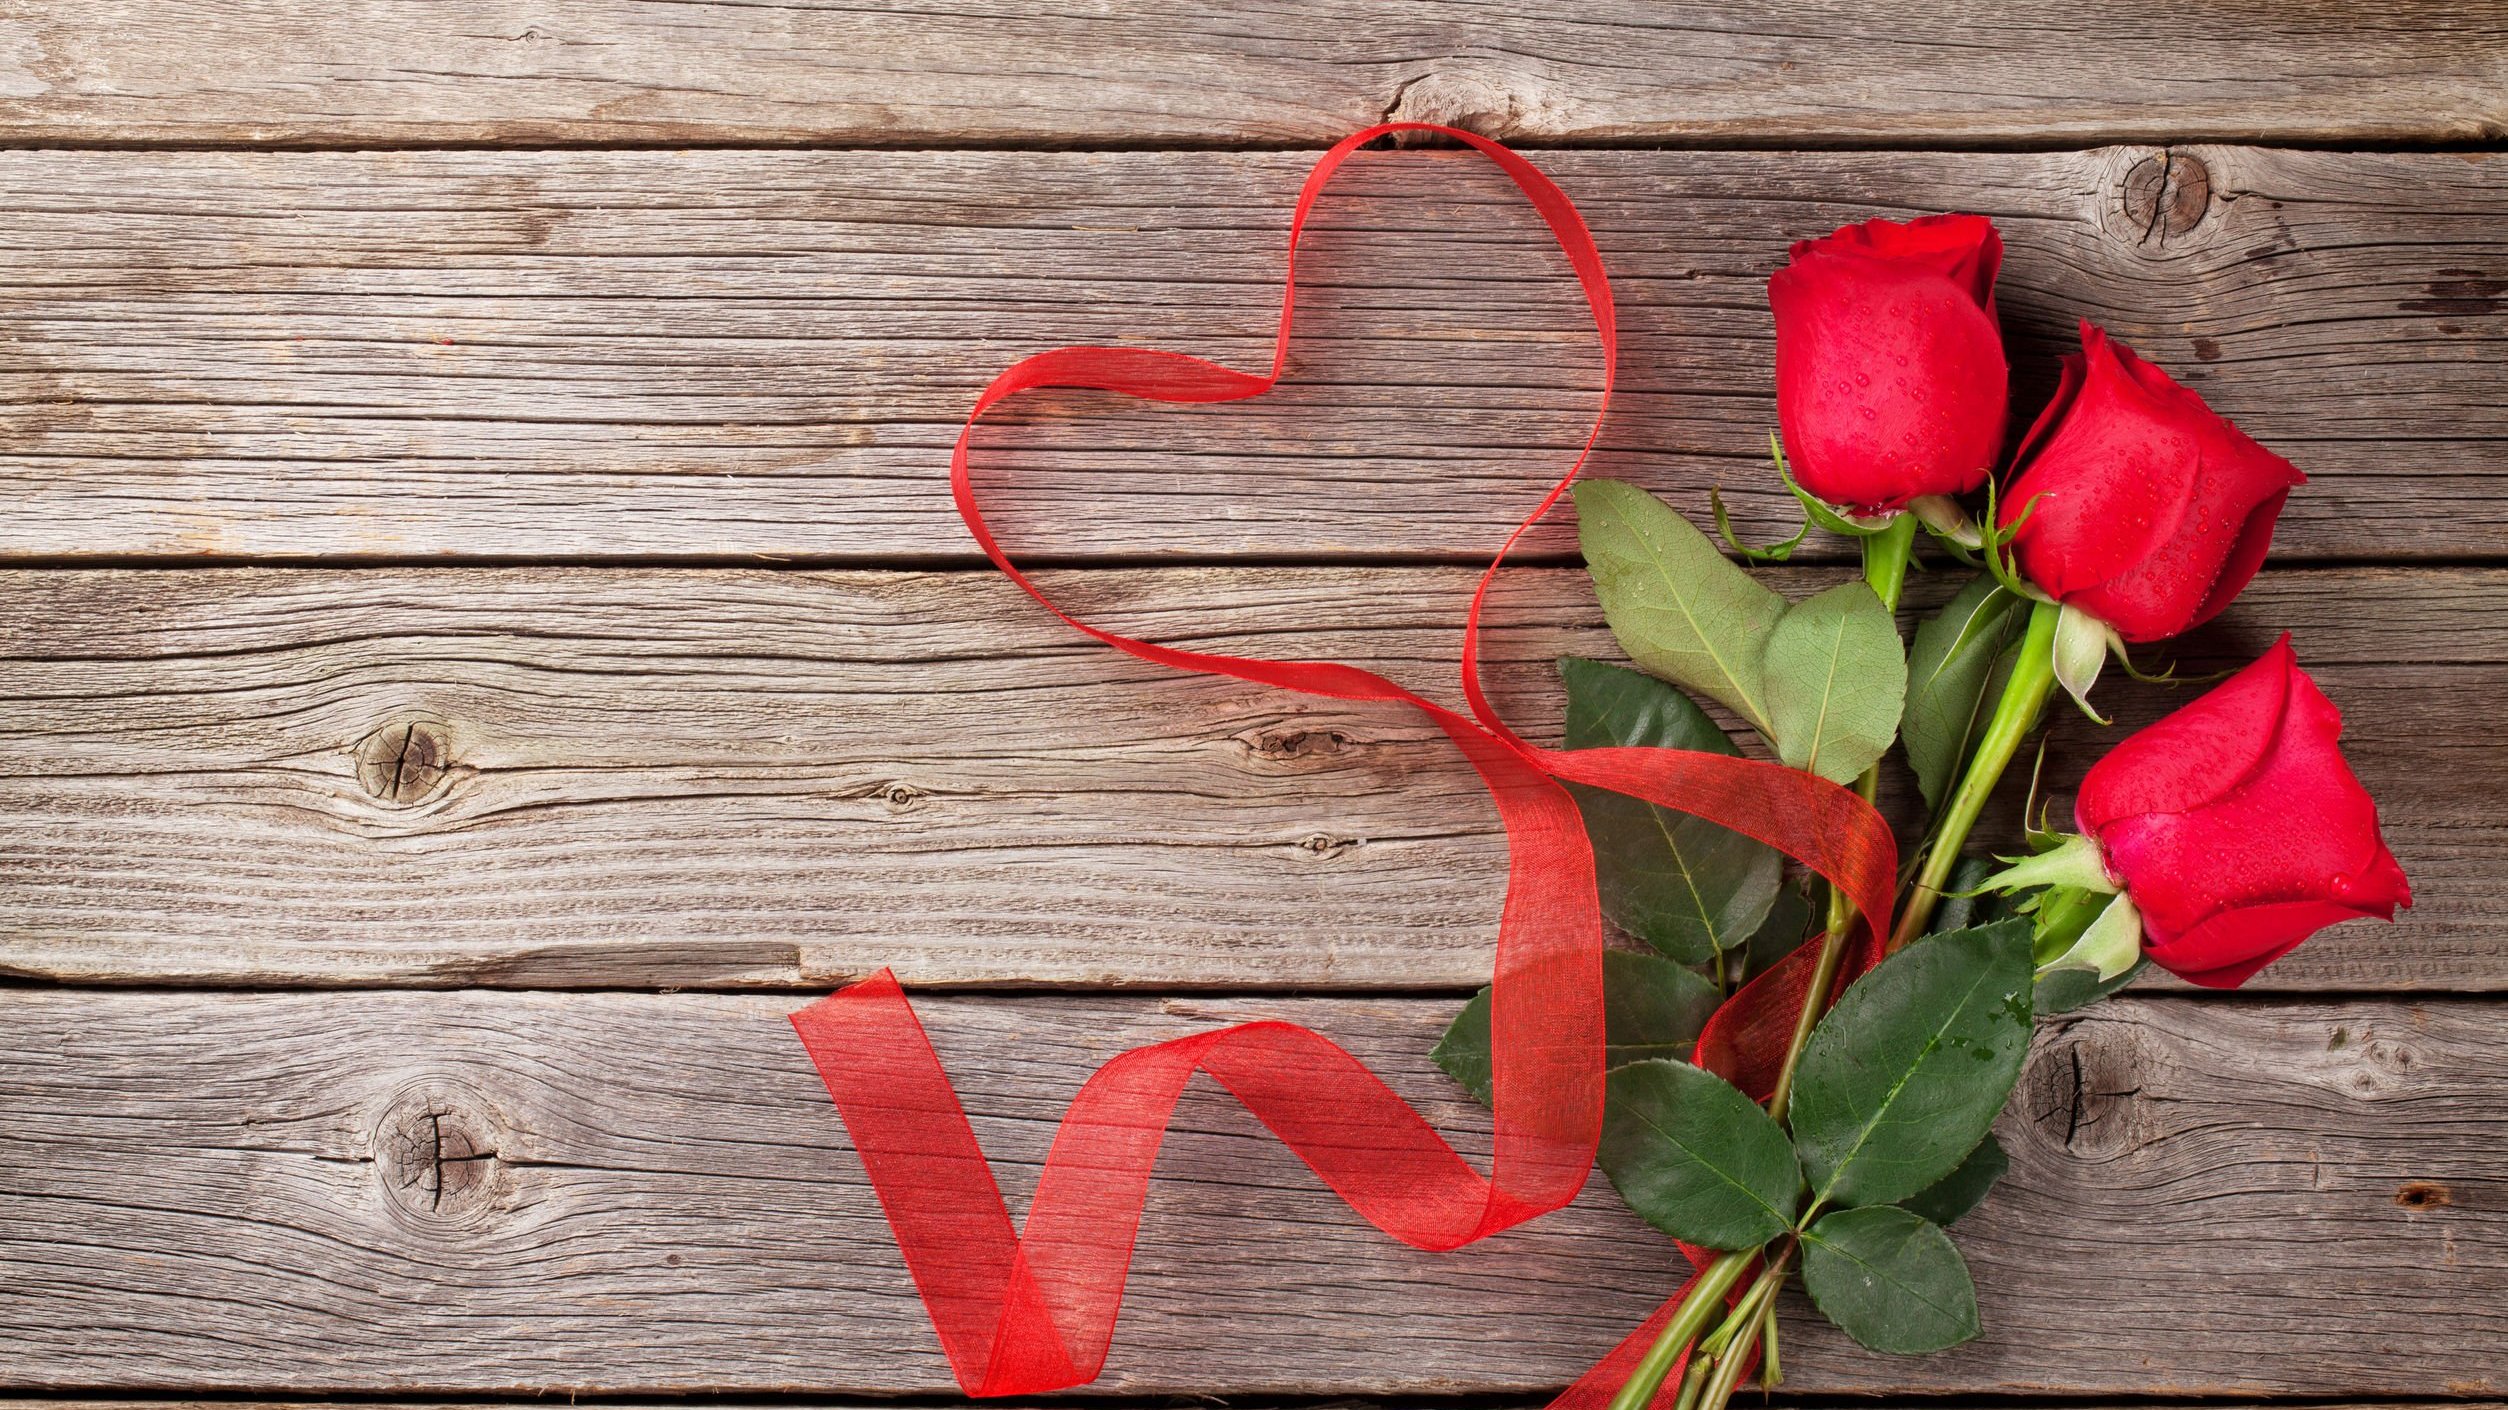 Rosas vermelhas ao lado de fita posta em formato de coração. Os dois estão sobre a madeira